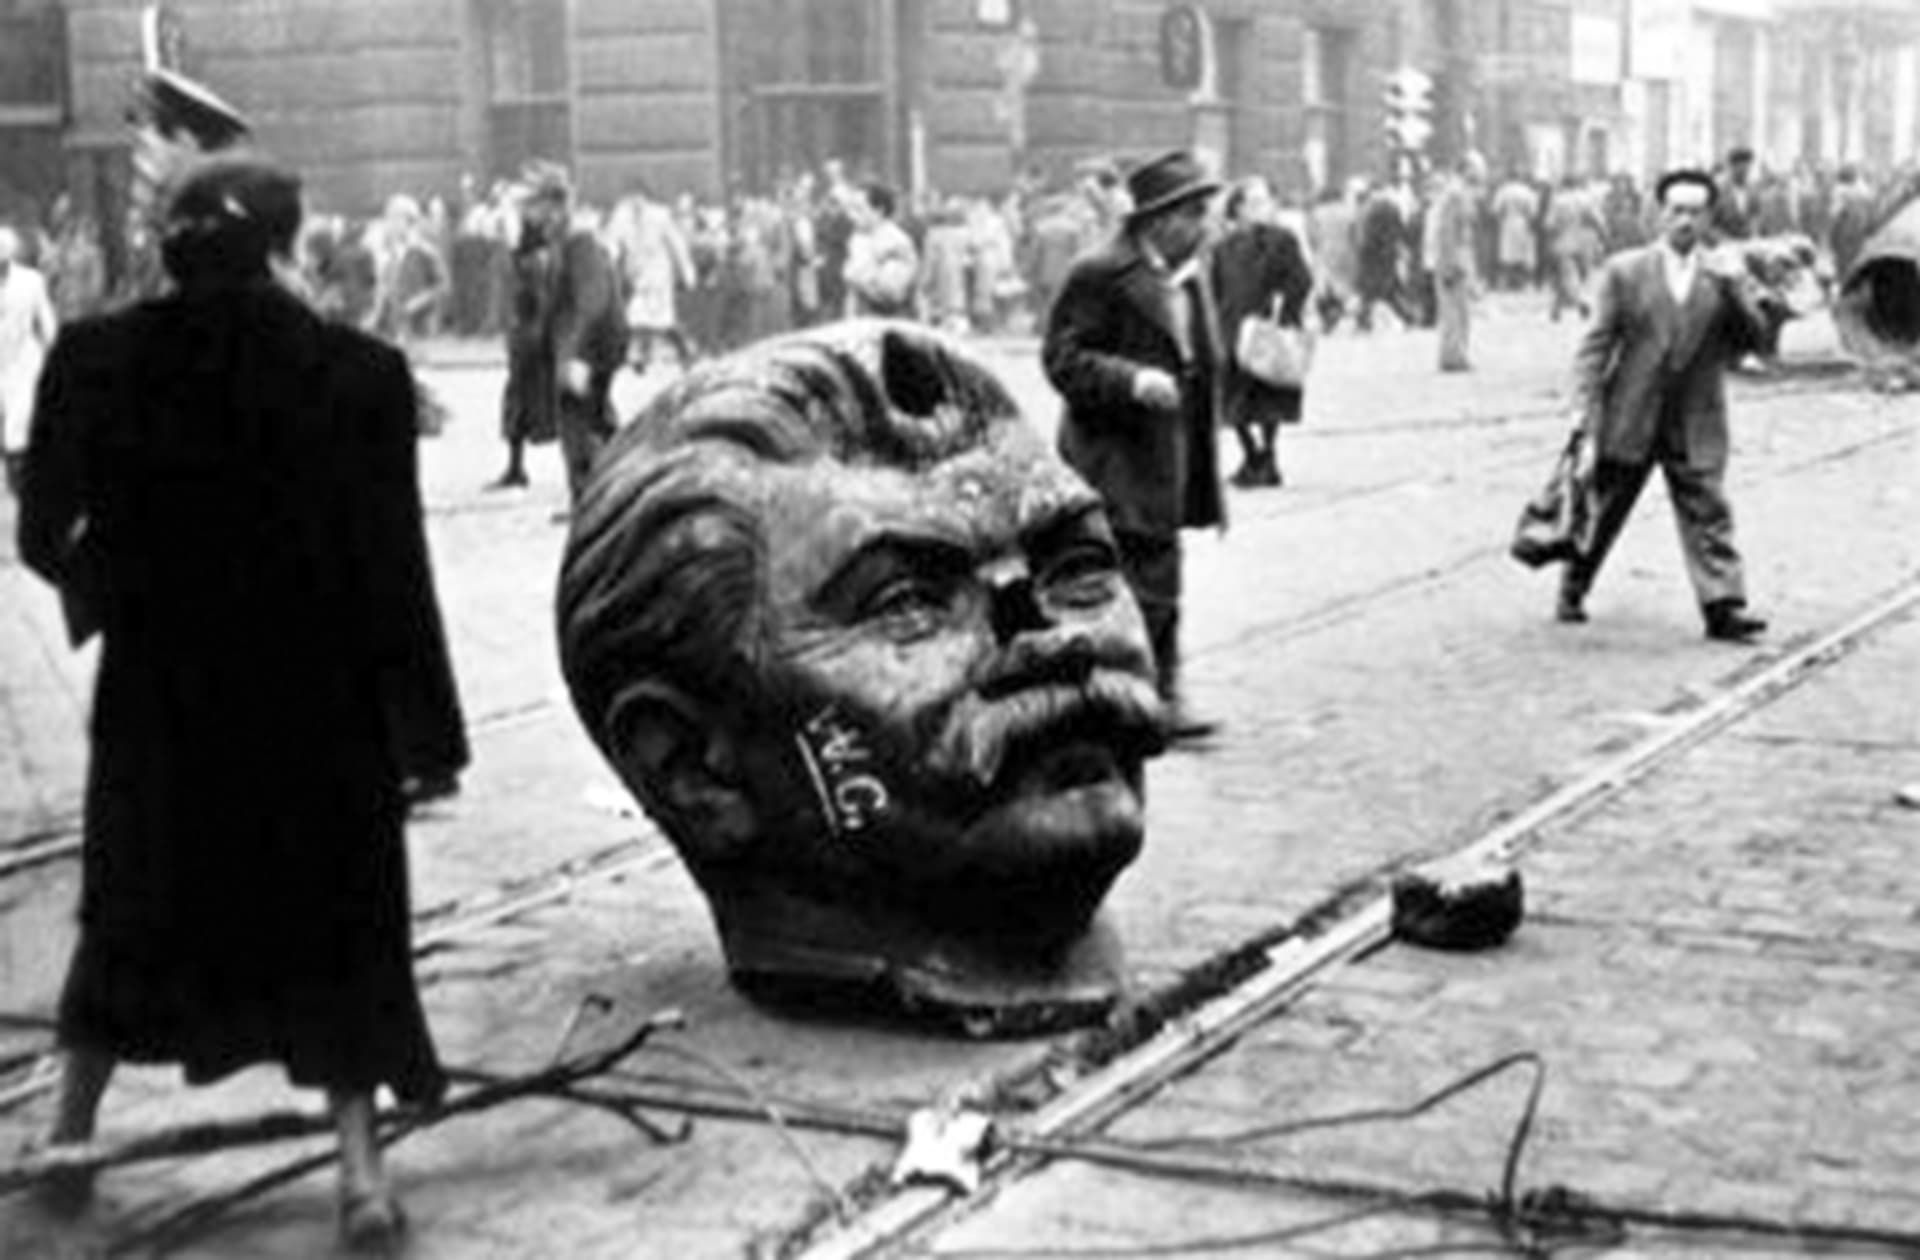 Hlava Stalinovy sochy, kterou rozbili demonstranti během povstání v Maďarsku v roce 1956. 